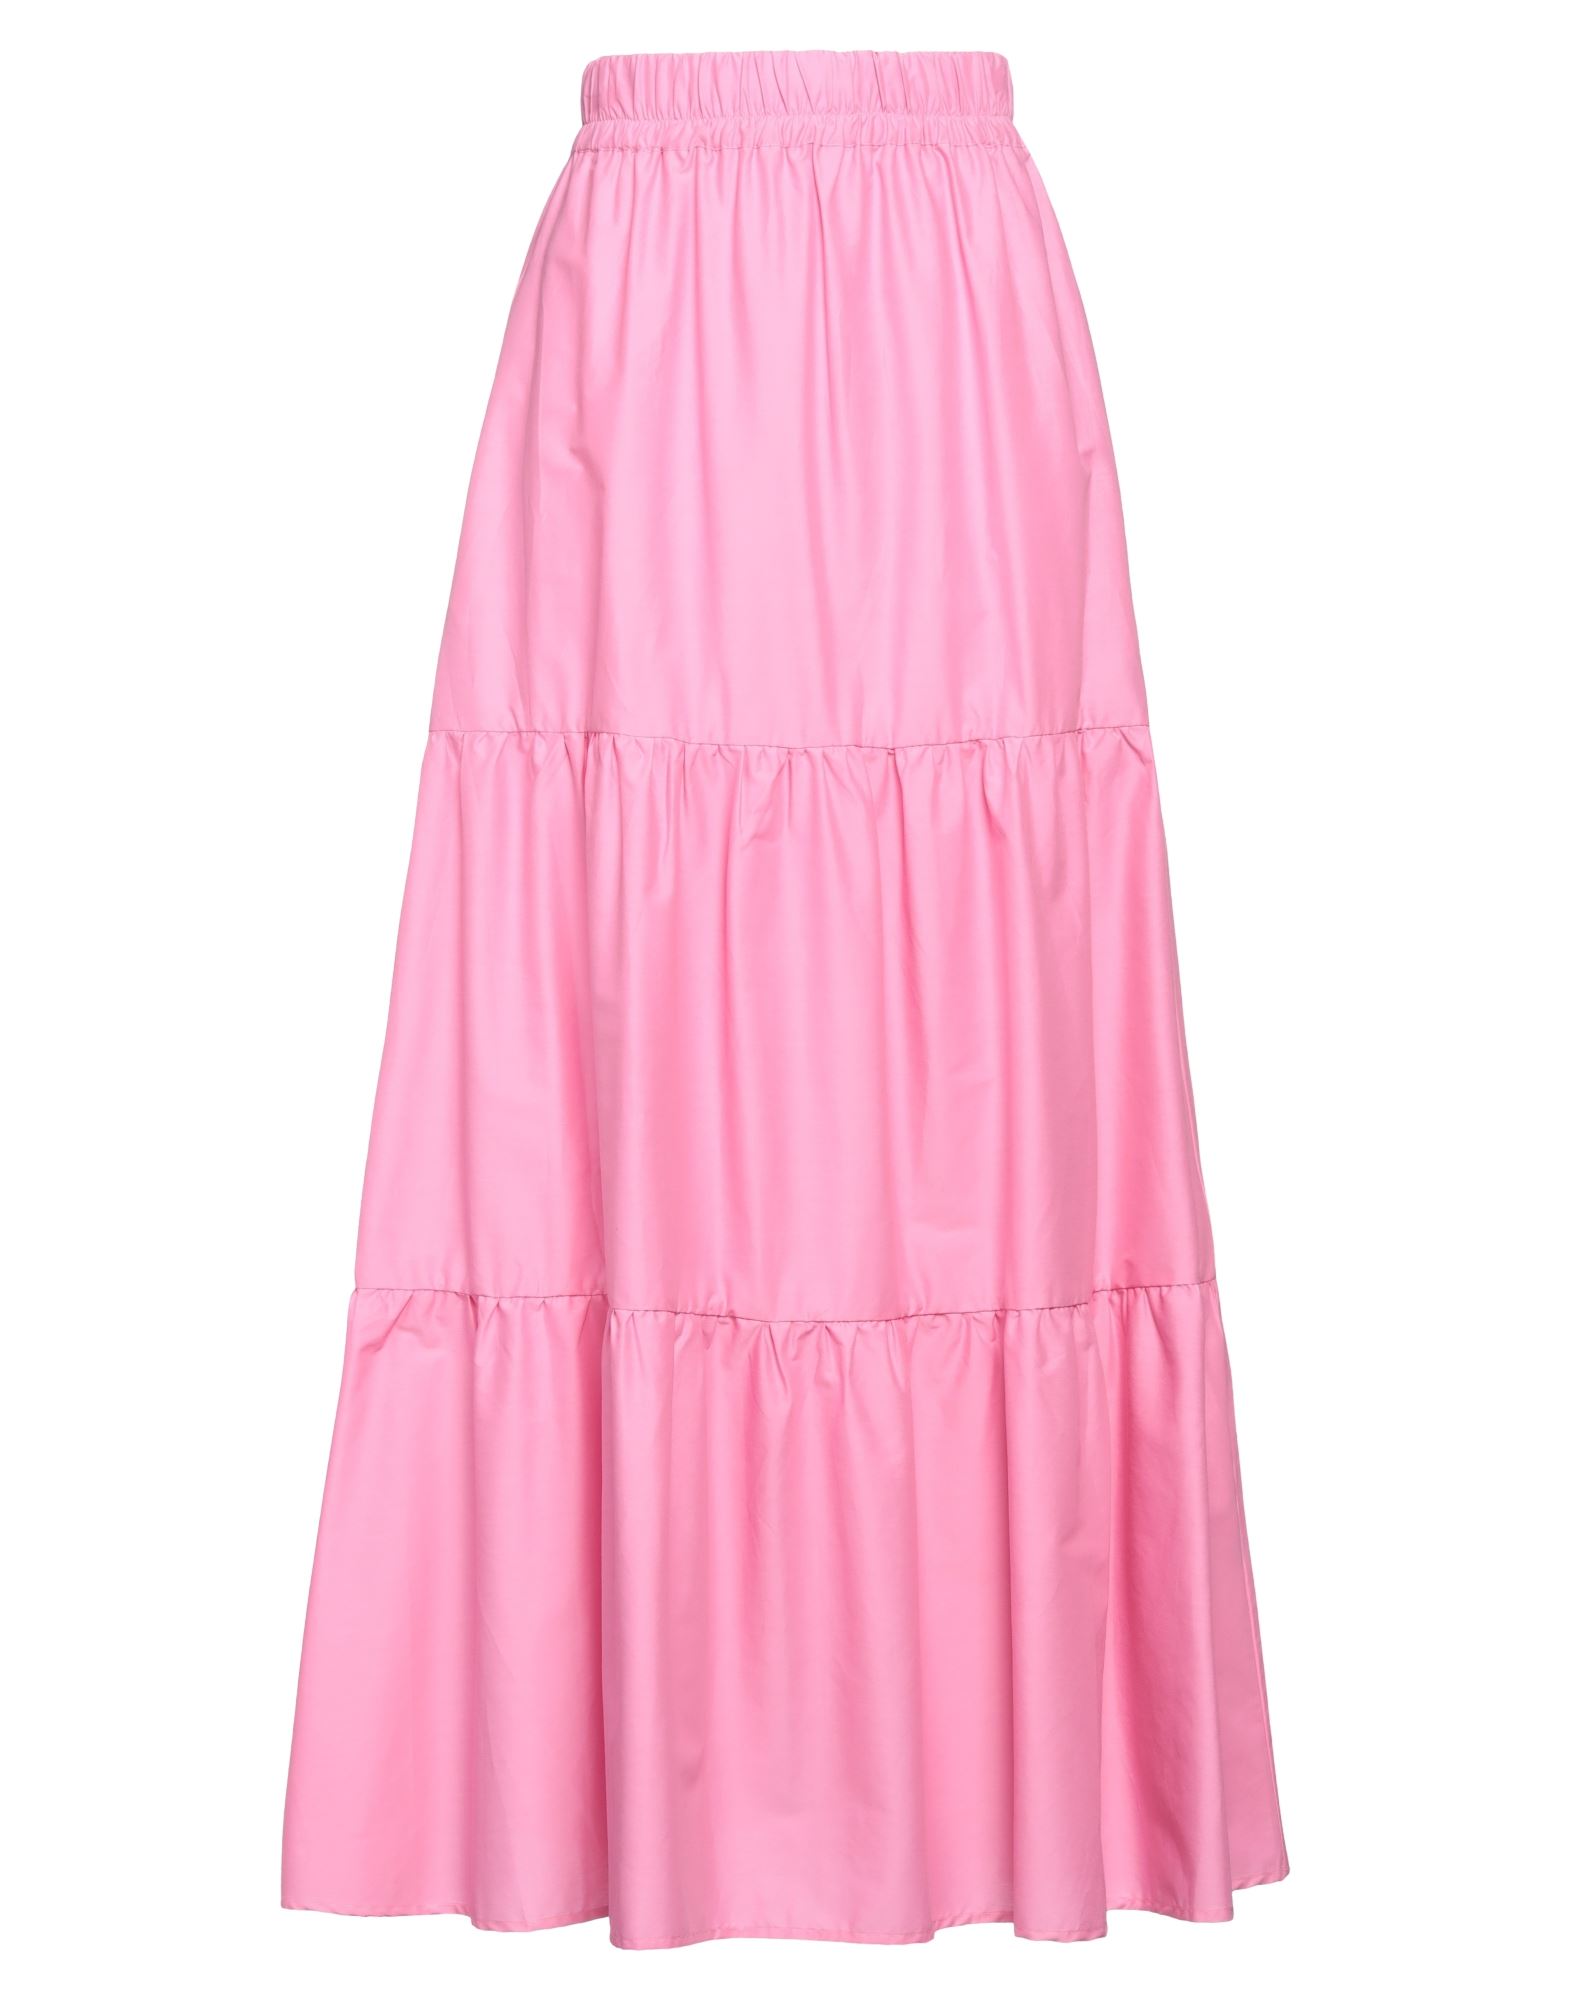 Emma & Gaia Woman Maxi Skirt Pink Size 6 Cotton, Polyamide, Elastane